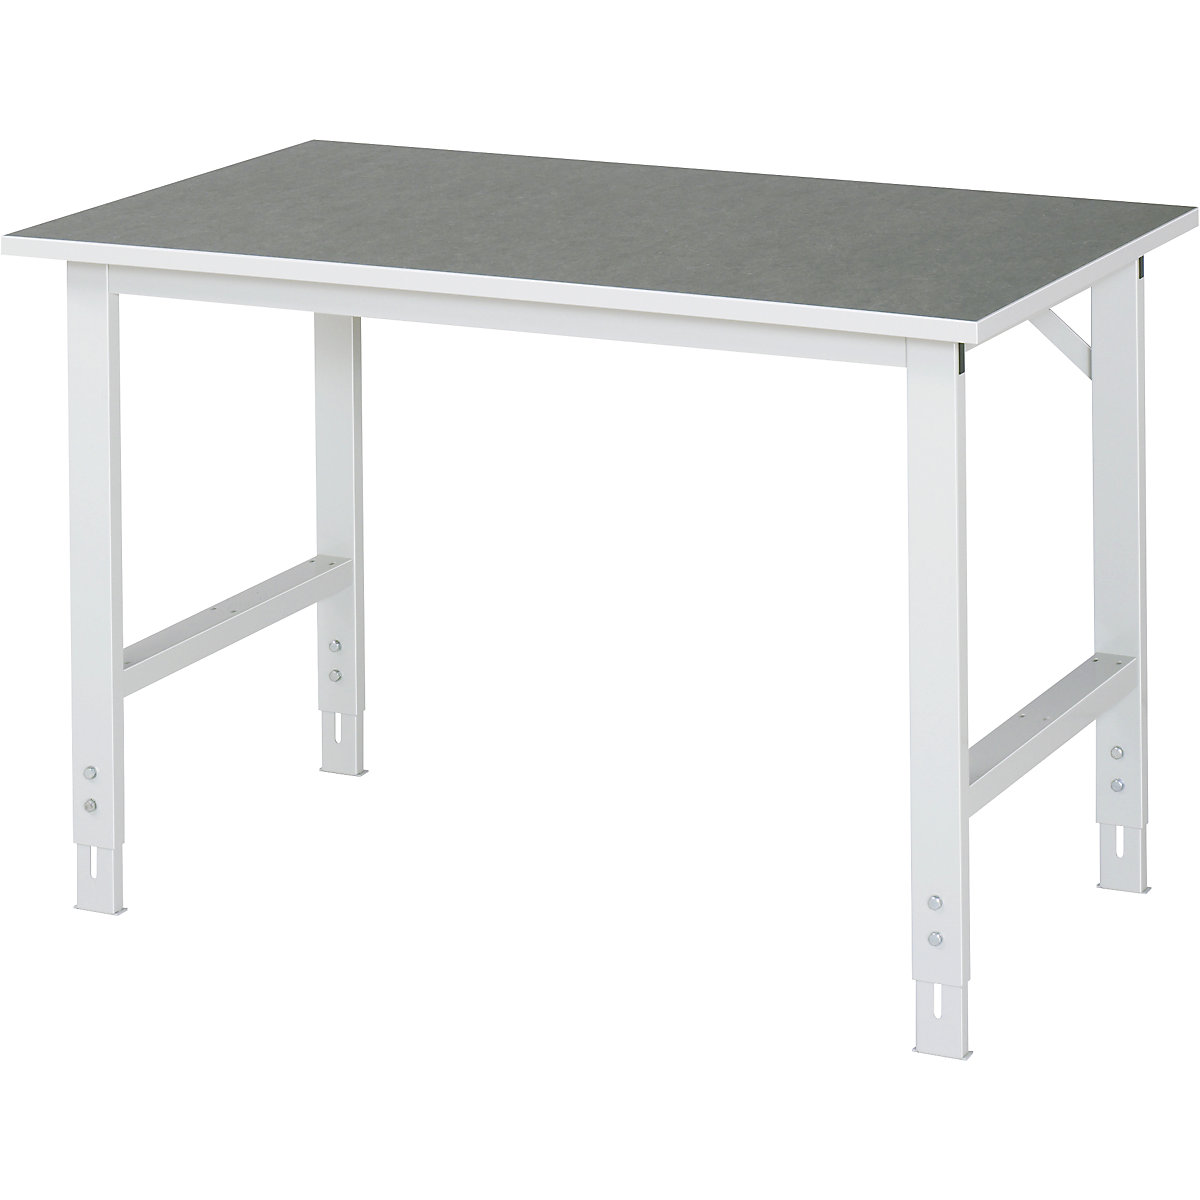 Stół roboczy, z regulacją wysokości – RAU, 760 – 1080 mm, blat z linoleum, szer. x głęb. 1250 x 800 mm, jasnoszary-6